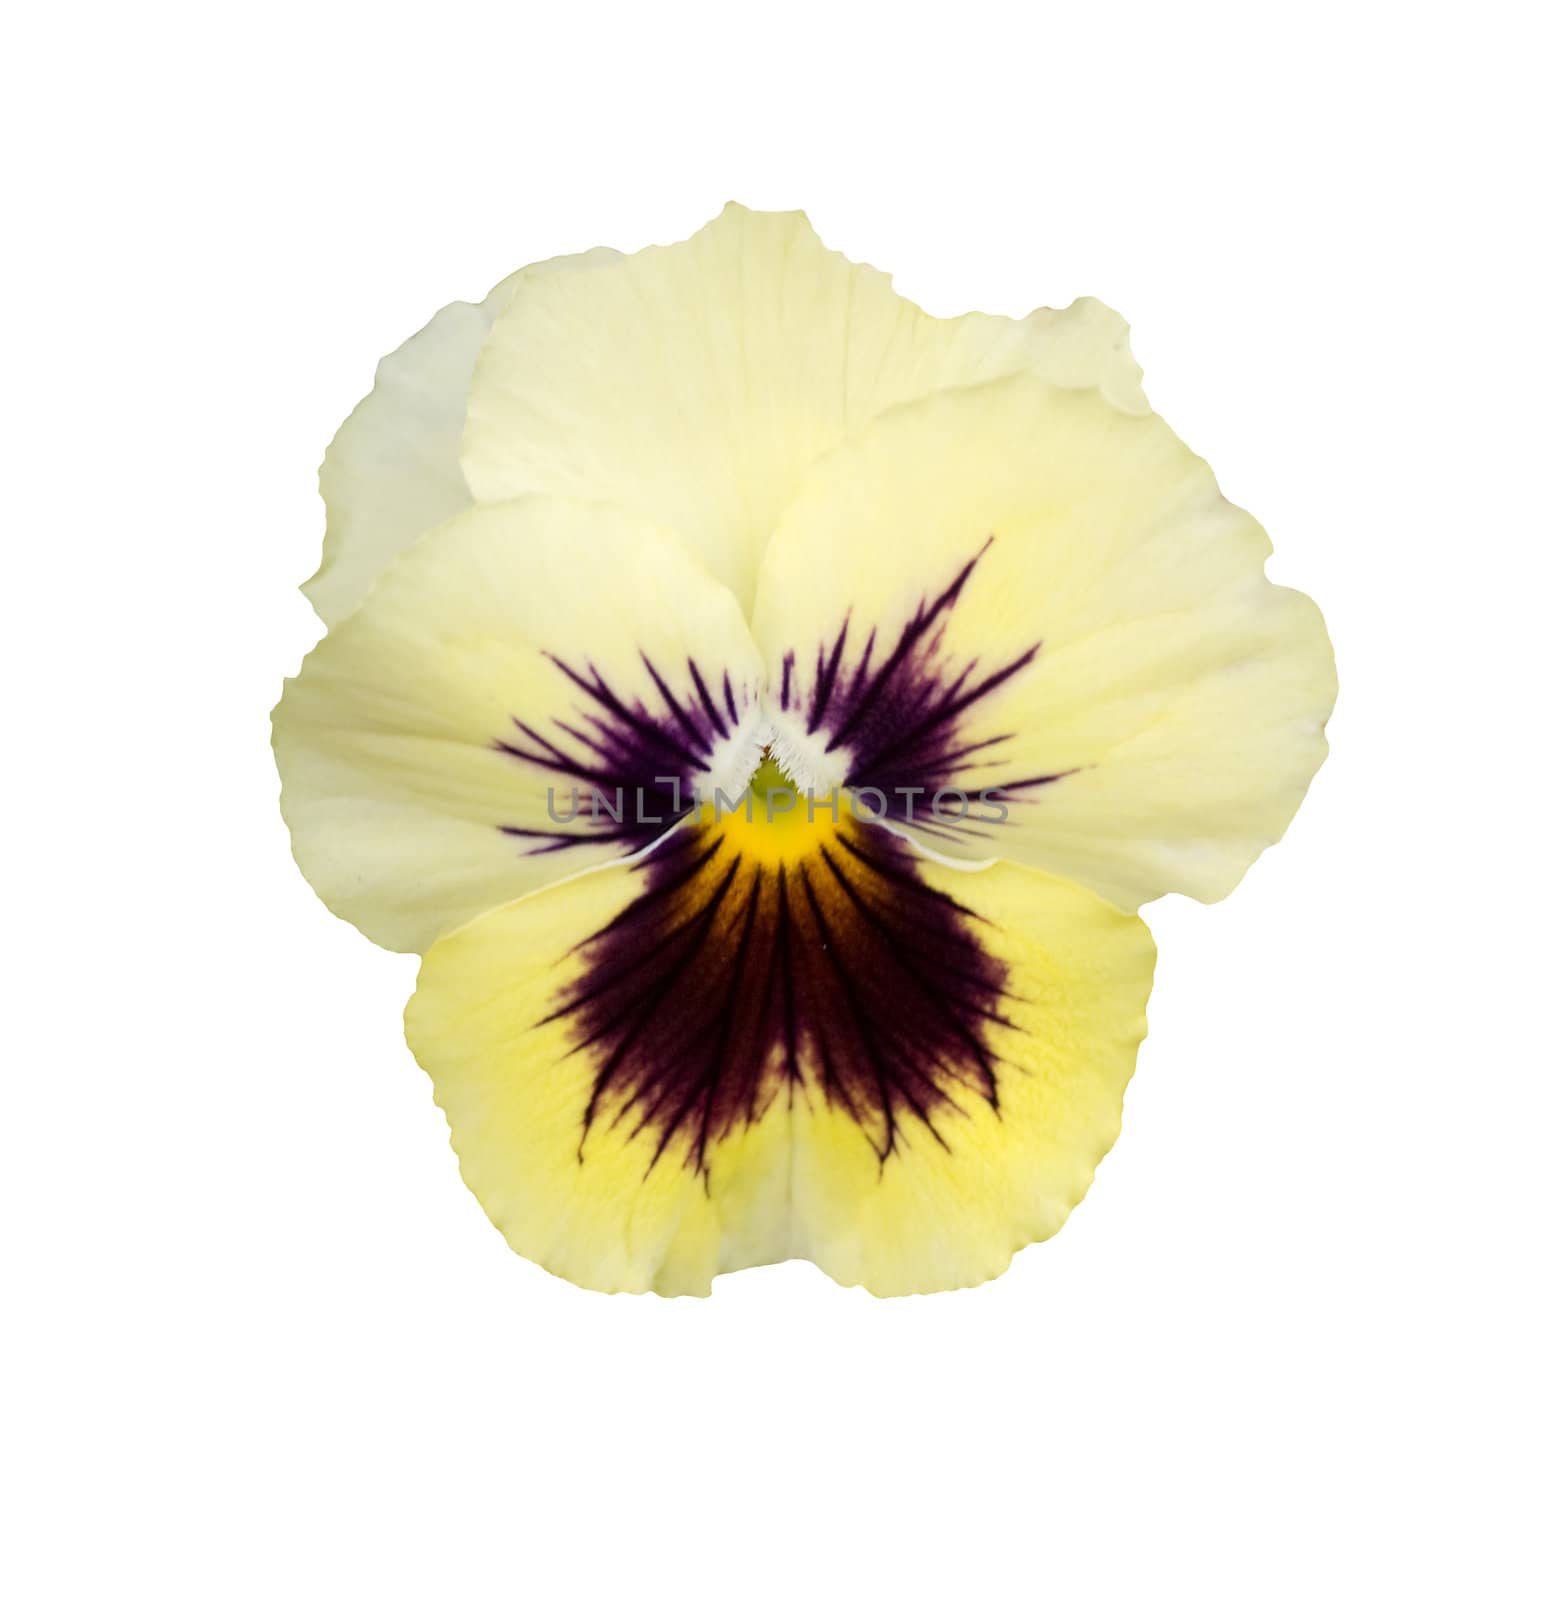 spring yellow cream velvet pansy flower isolated on white by sherj